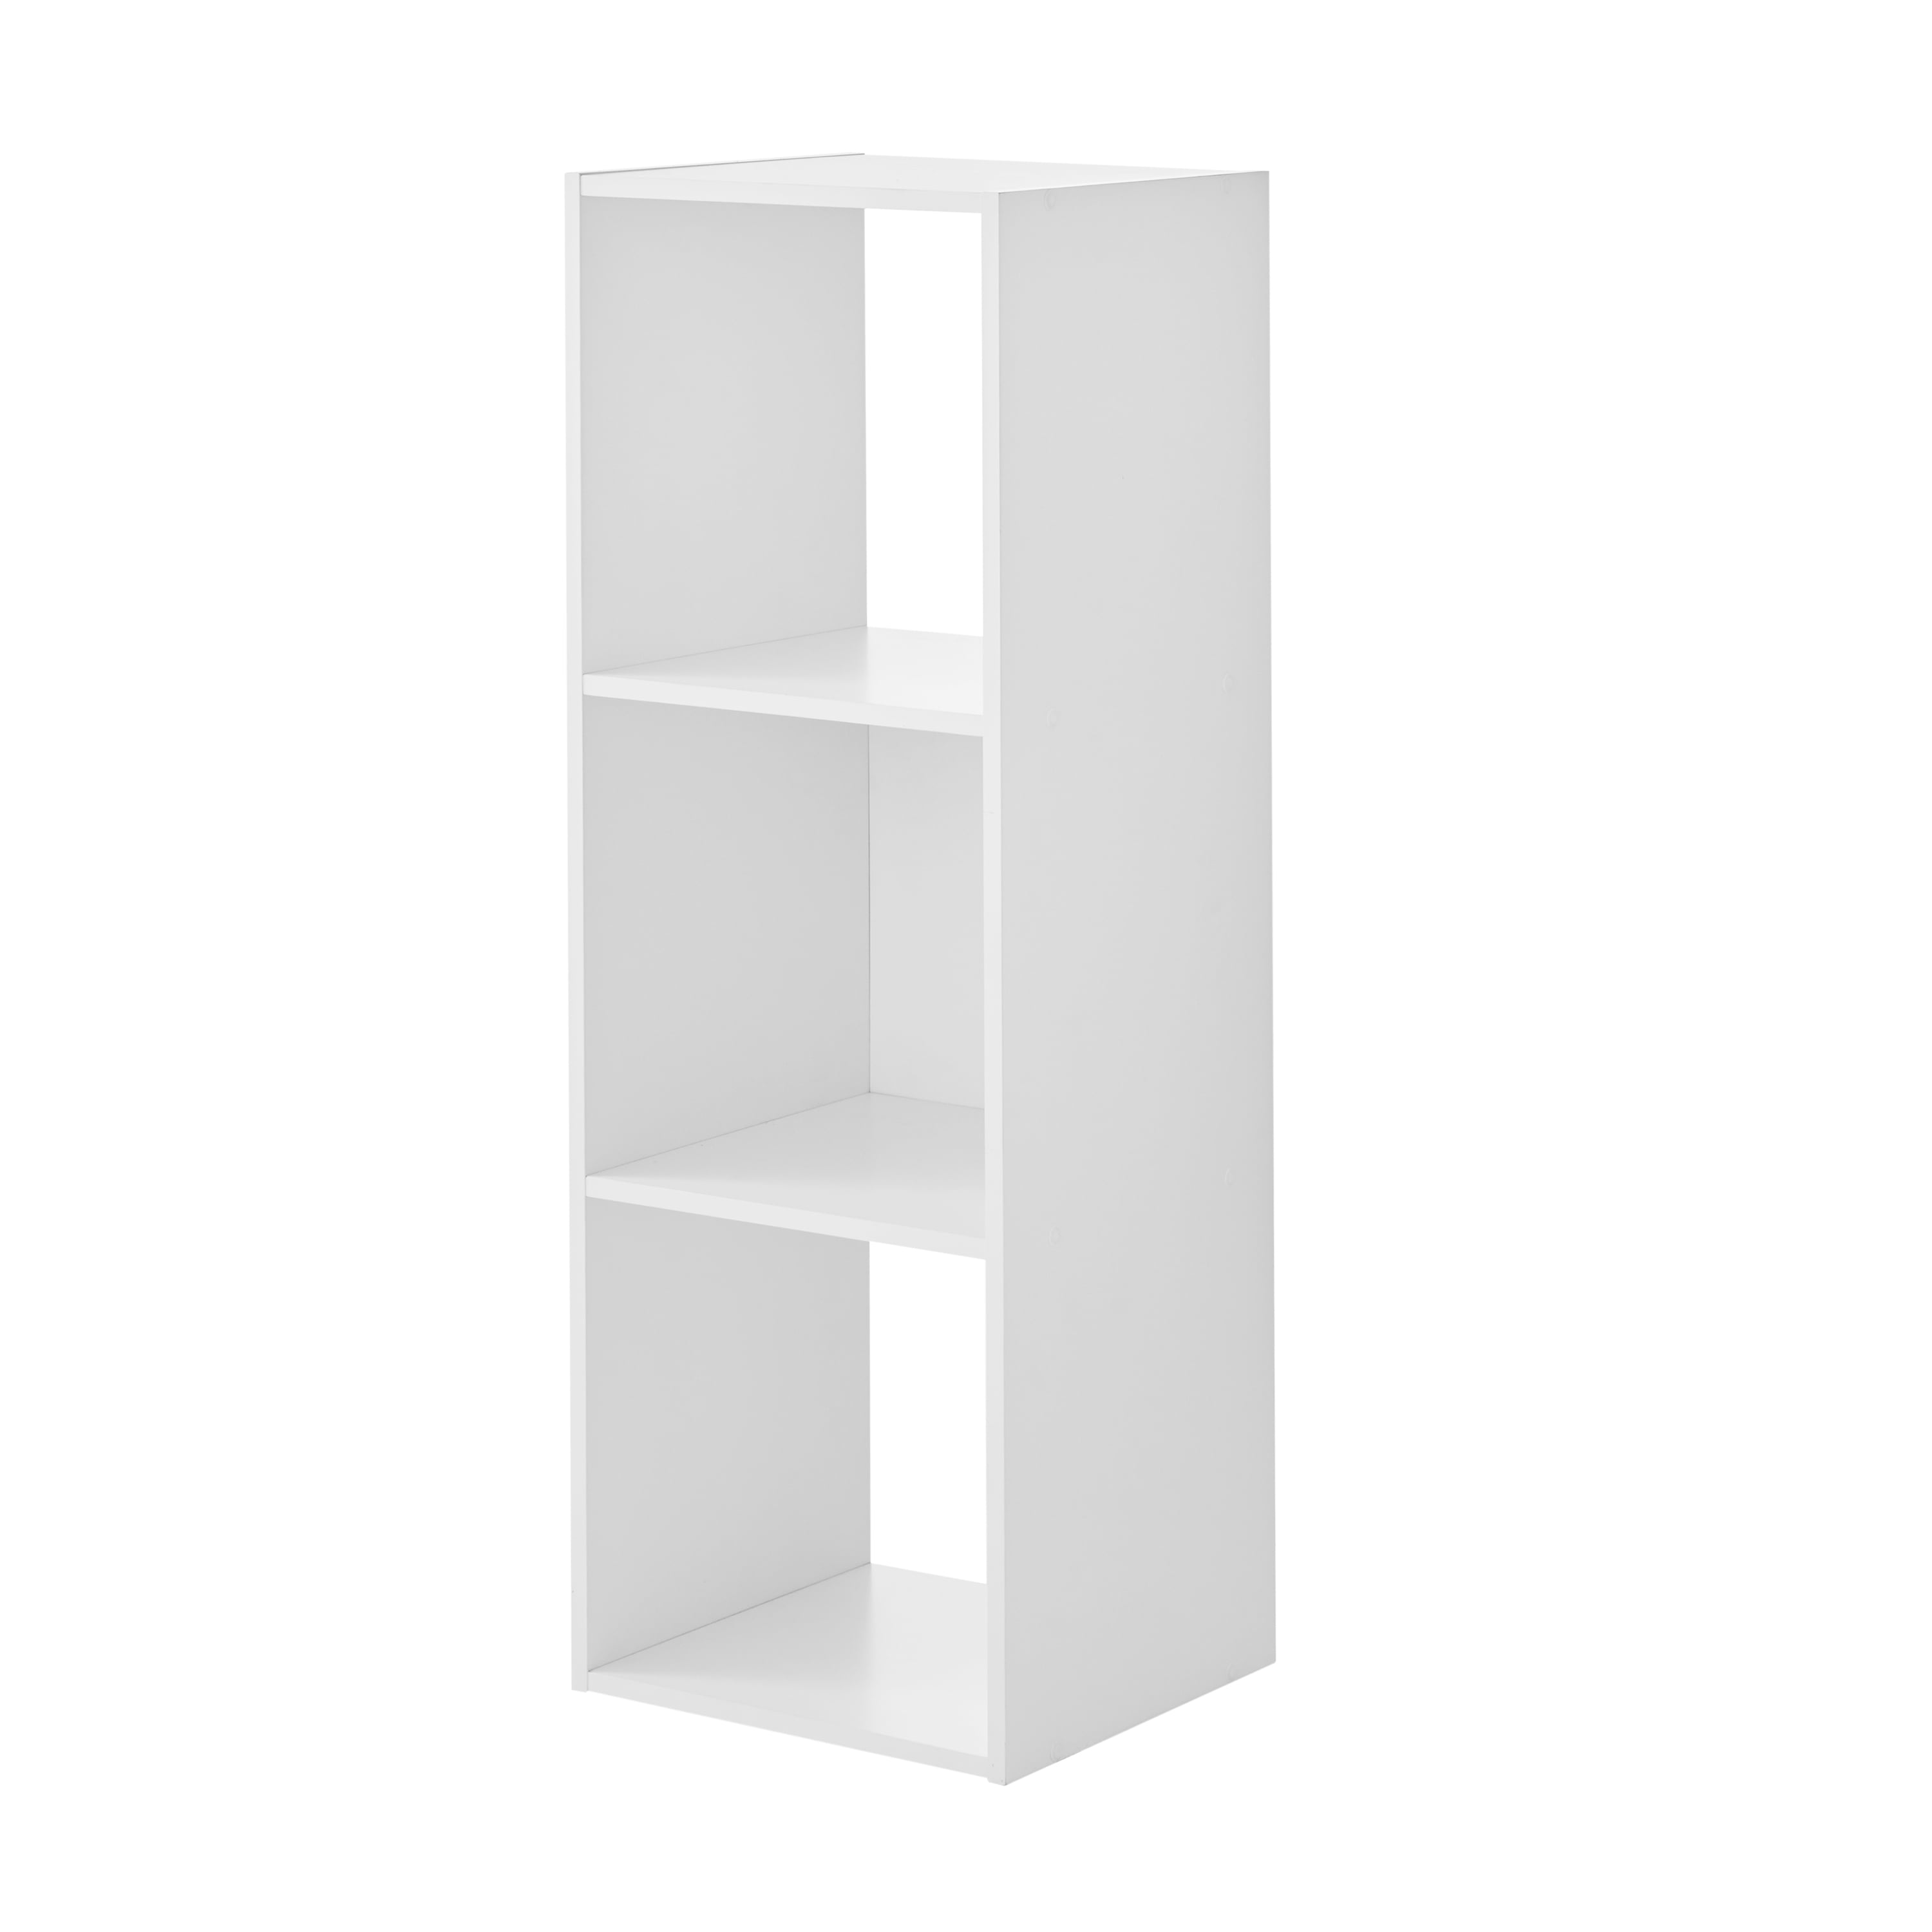 ClosetMaid 1024 Cubeicals Organizer 3-Cube White